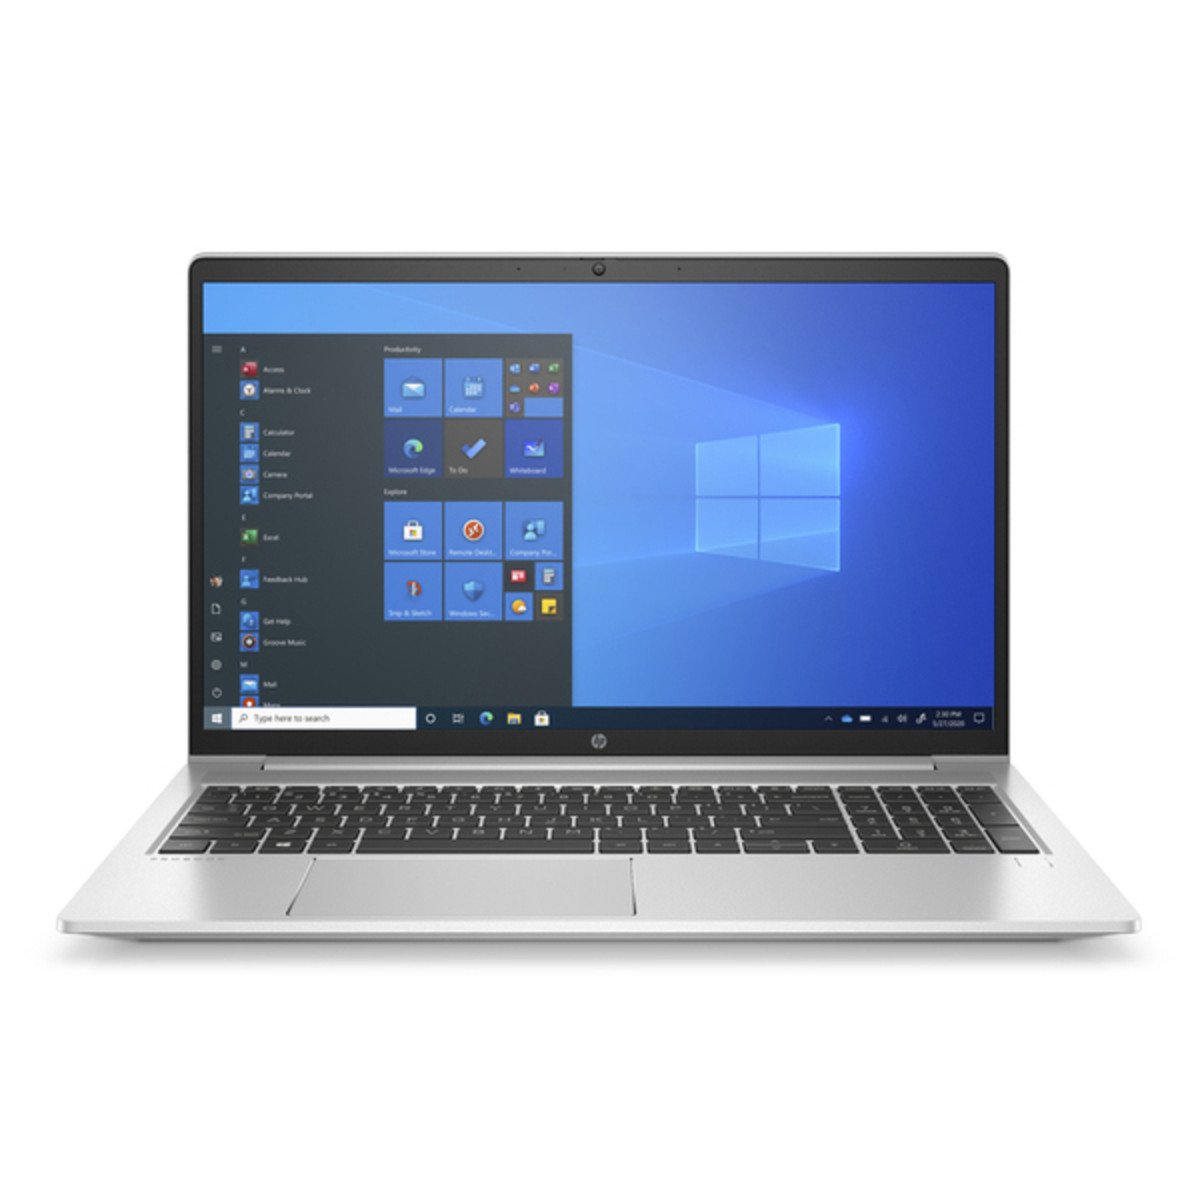 HP ProBook 455 G8 15.6 Inch Ryzen 5 5600U 2.3GHz 8GB RAM 256GB SSD Laptop with Windows 10 Pro